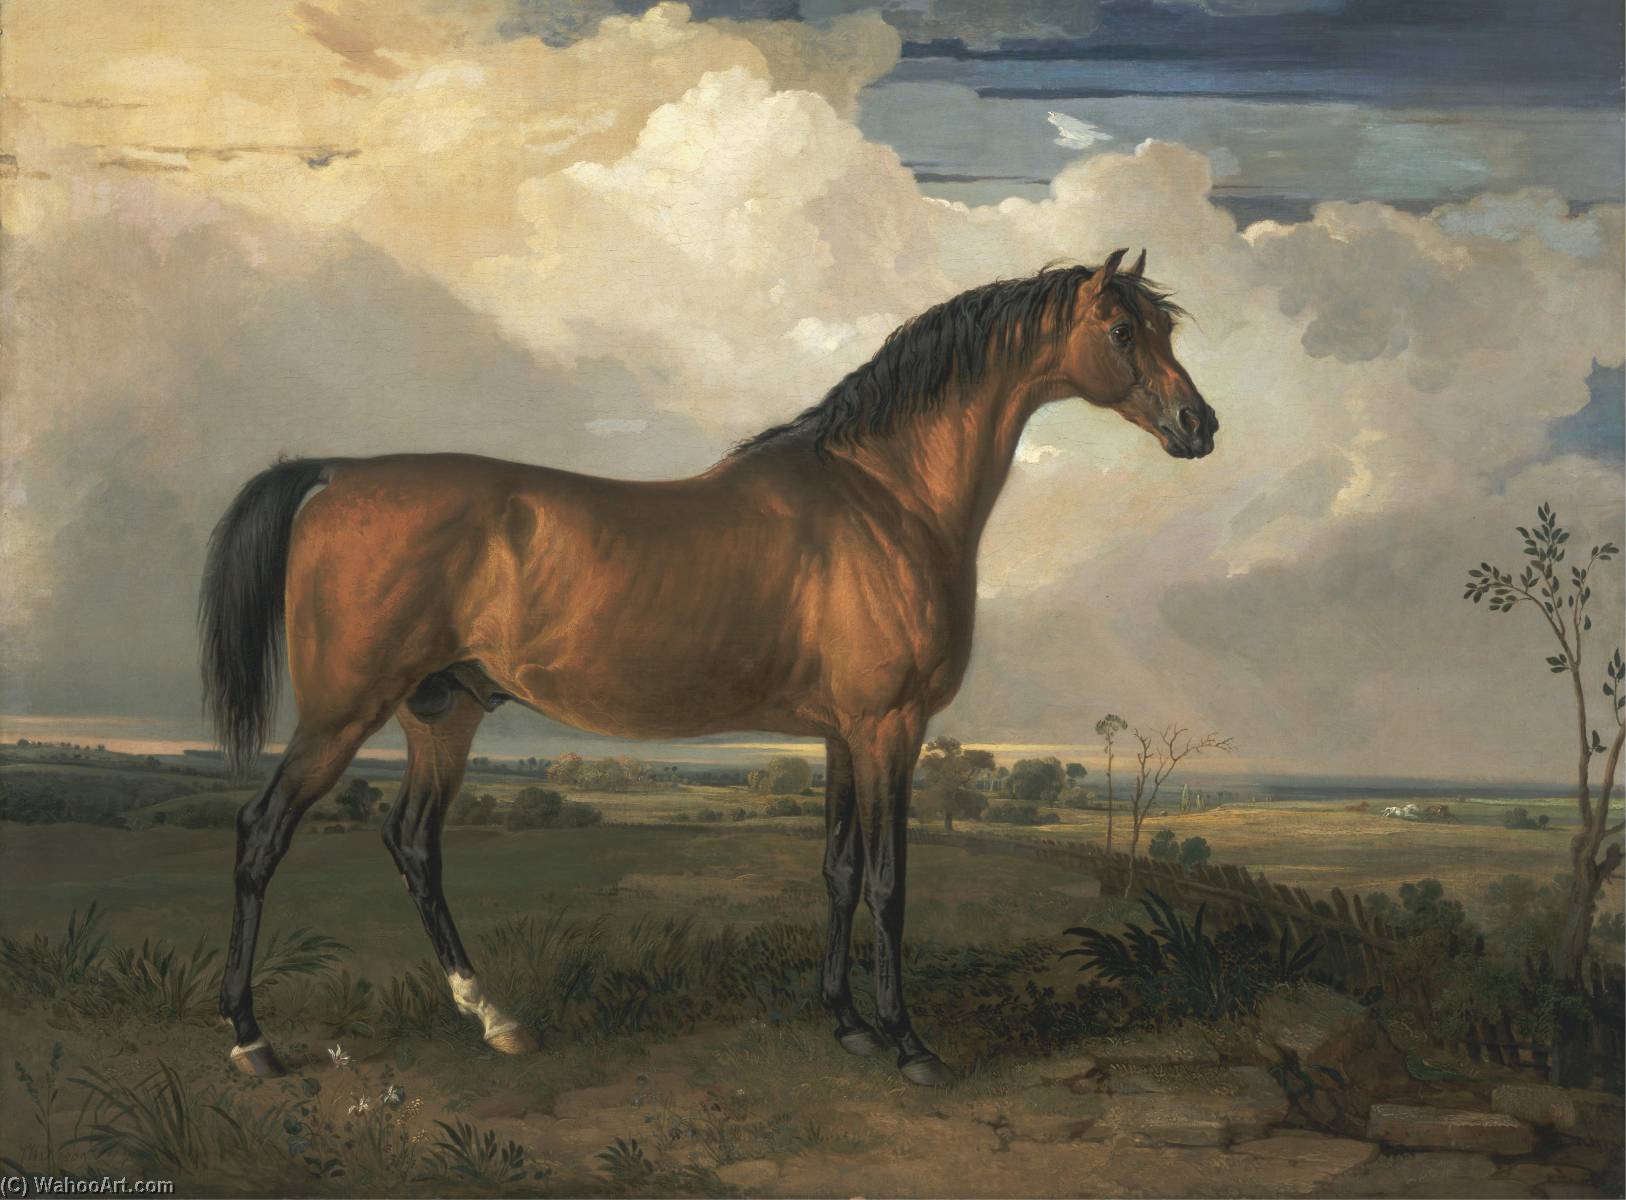 WikiOO.org – 美術百科全書 - 繪畫，作品 James Ward - 鹰 一个  著名  种马